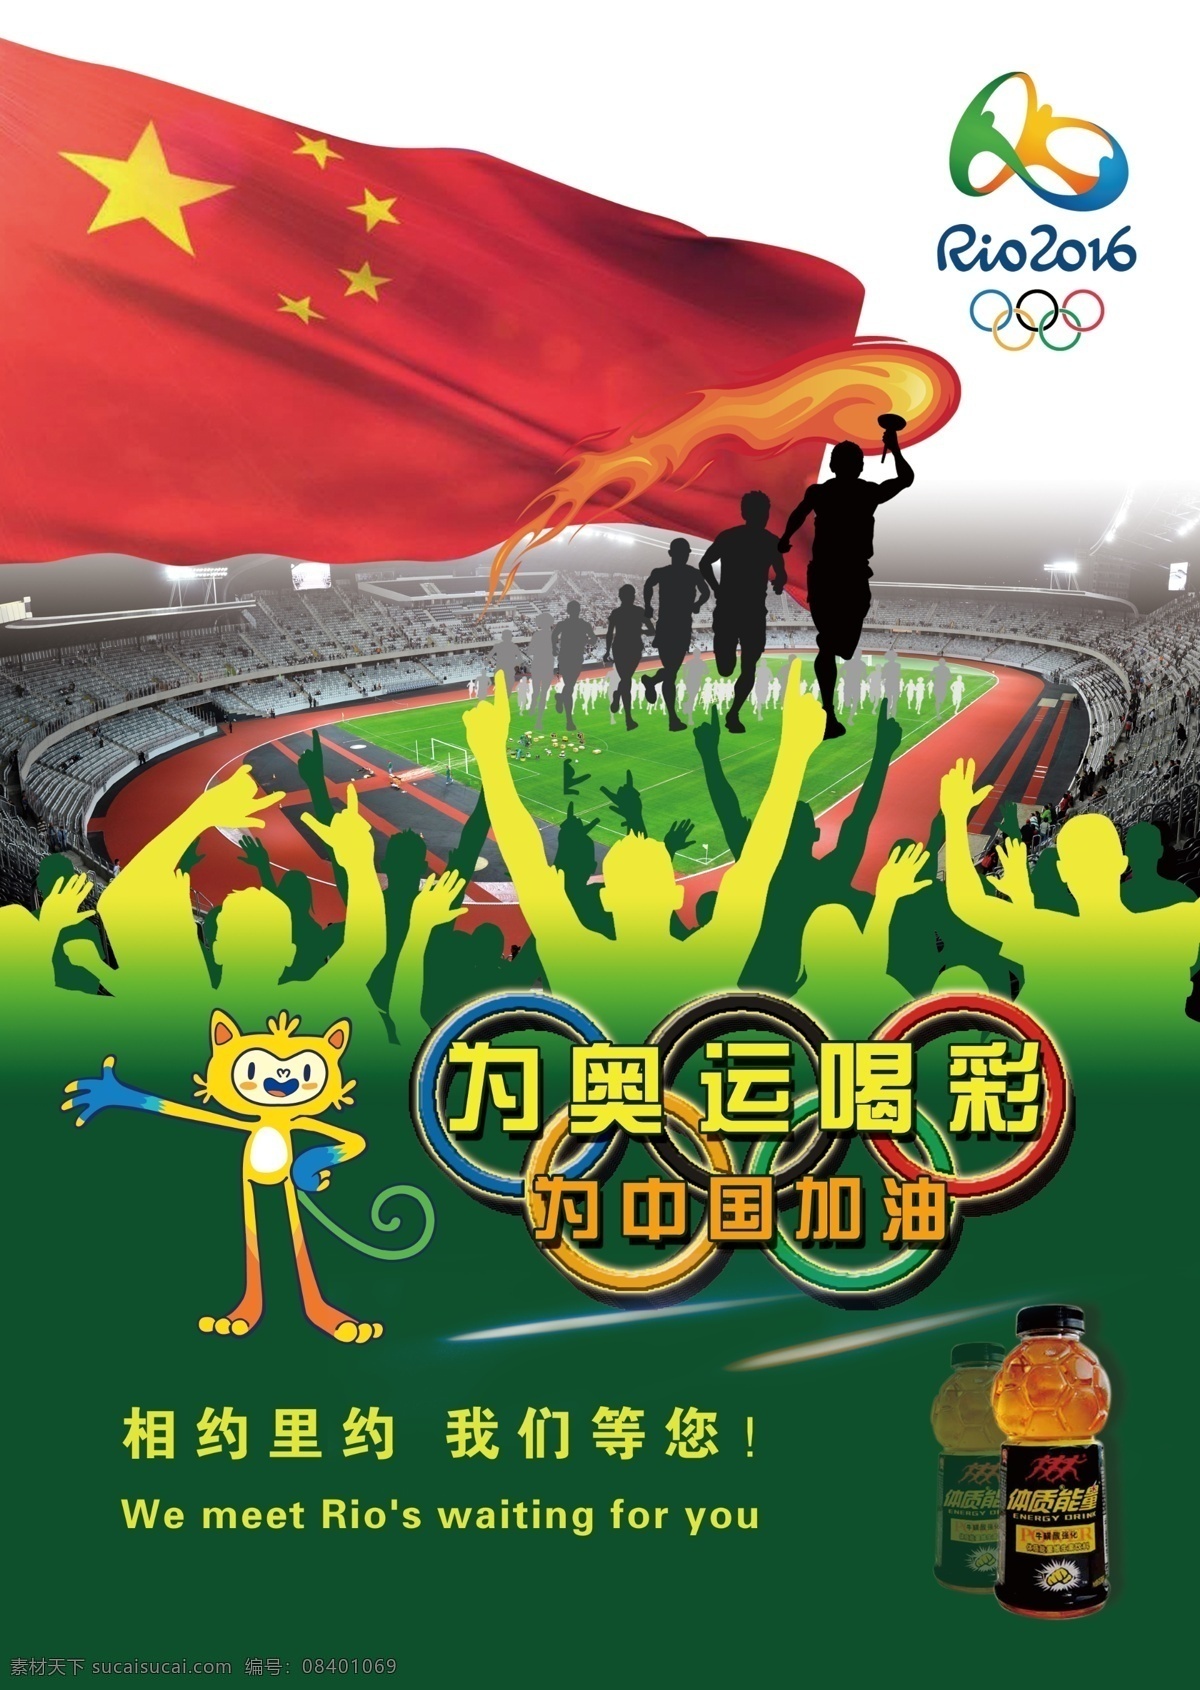 里约 奥运宣传海报 颜色鲜明 主题明确 构图和谐 绿色